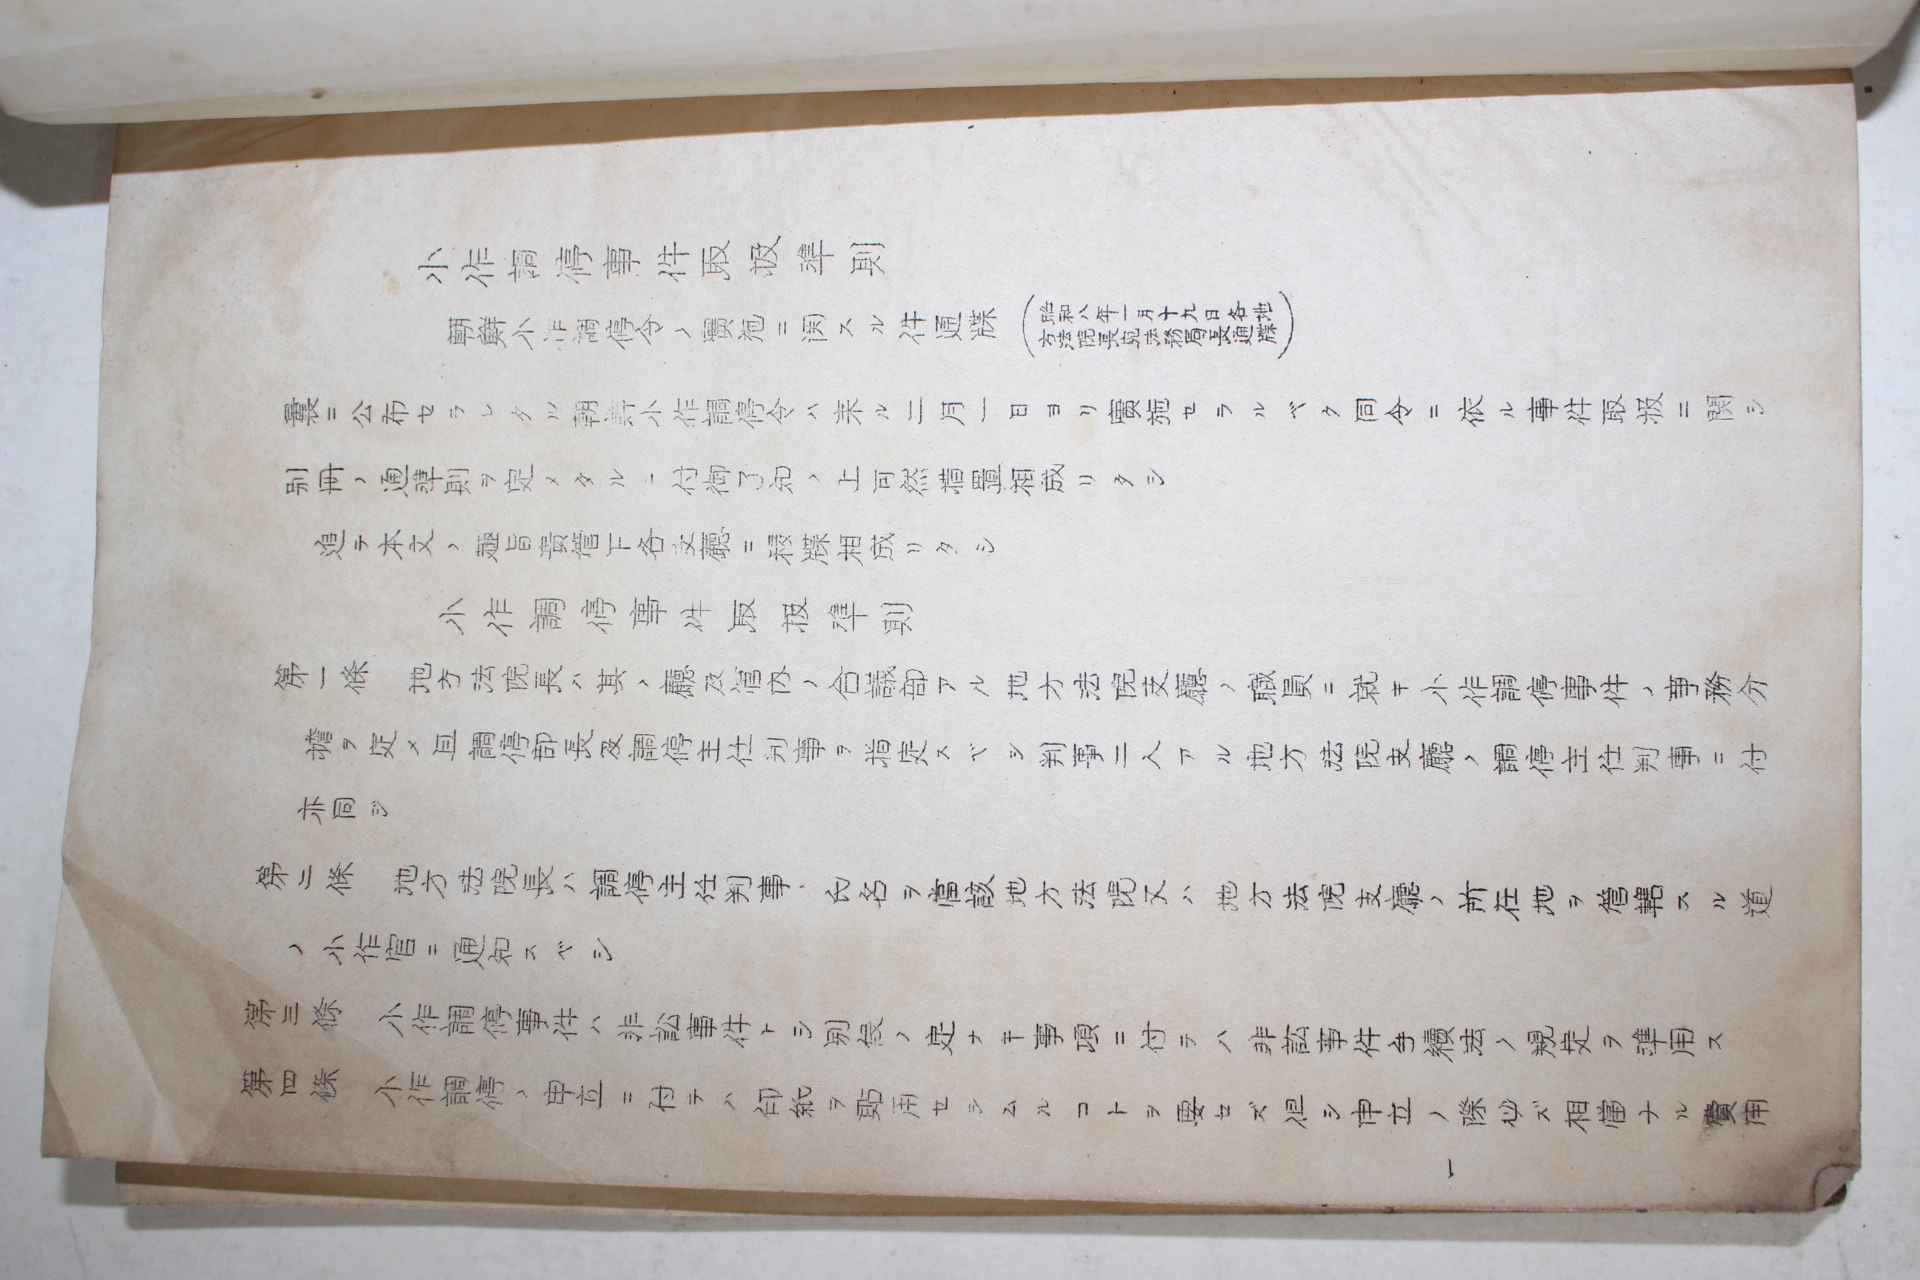 1933년 조선총독부 소작조정사건취급준칙(小作調停事件取扱準則)